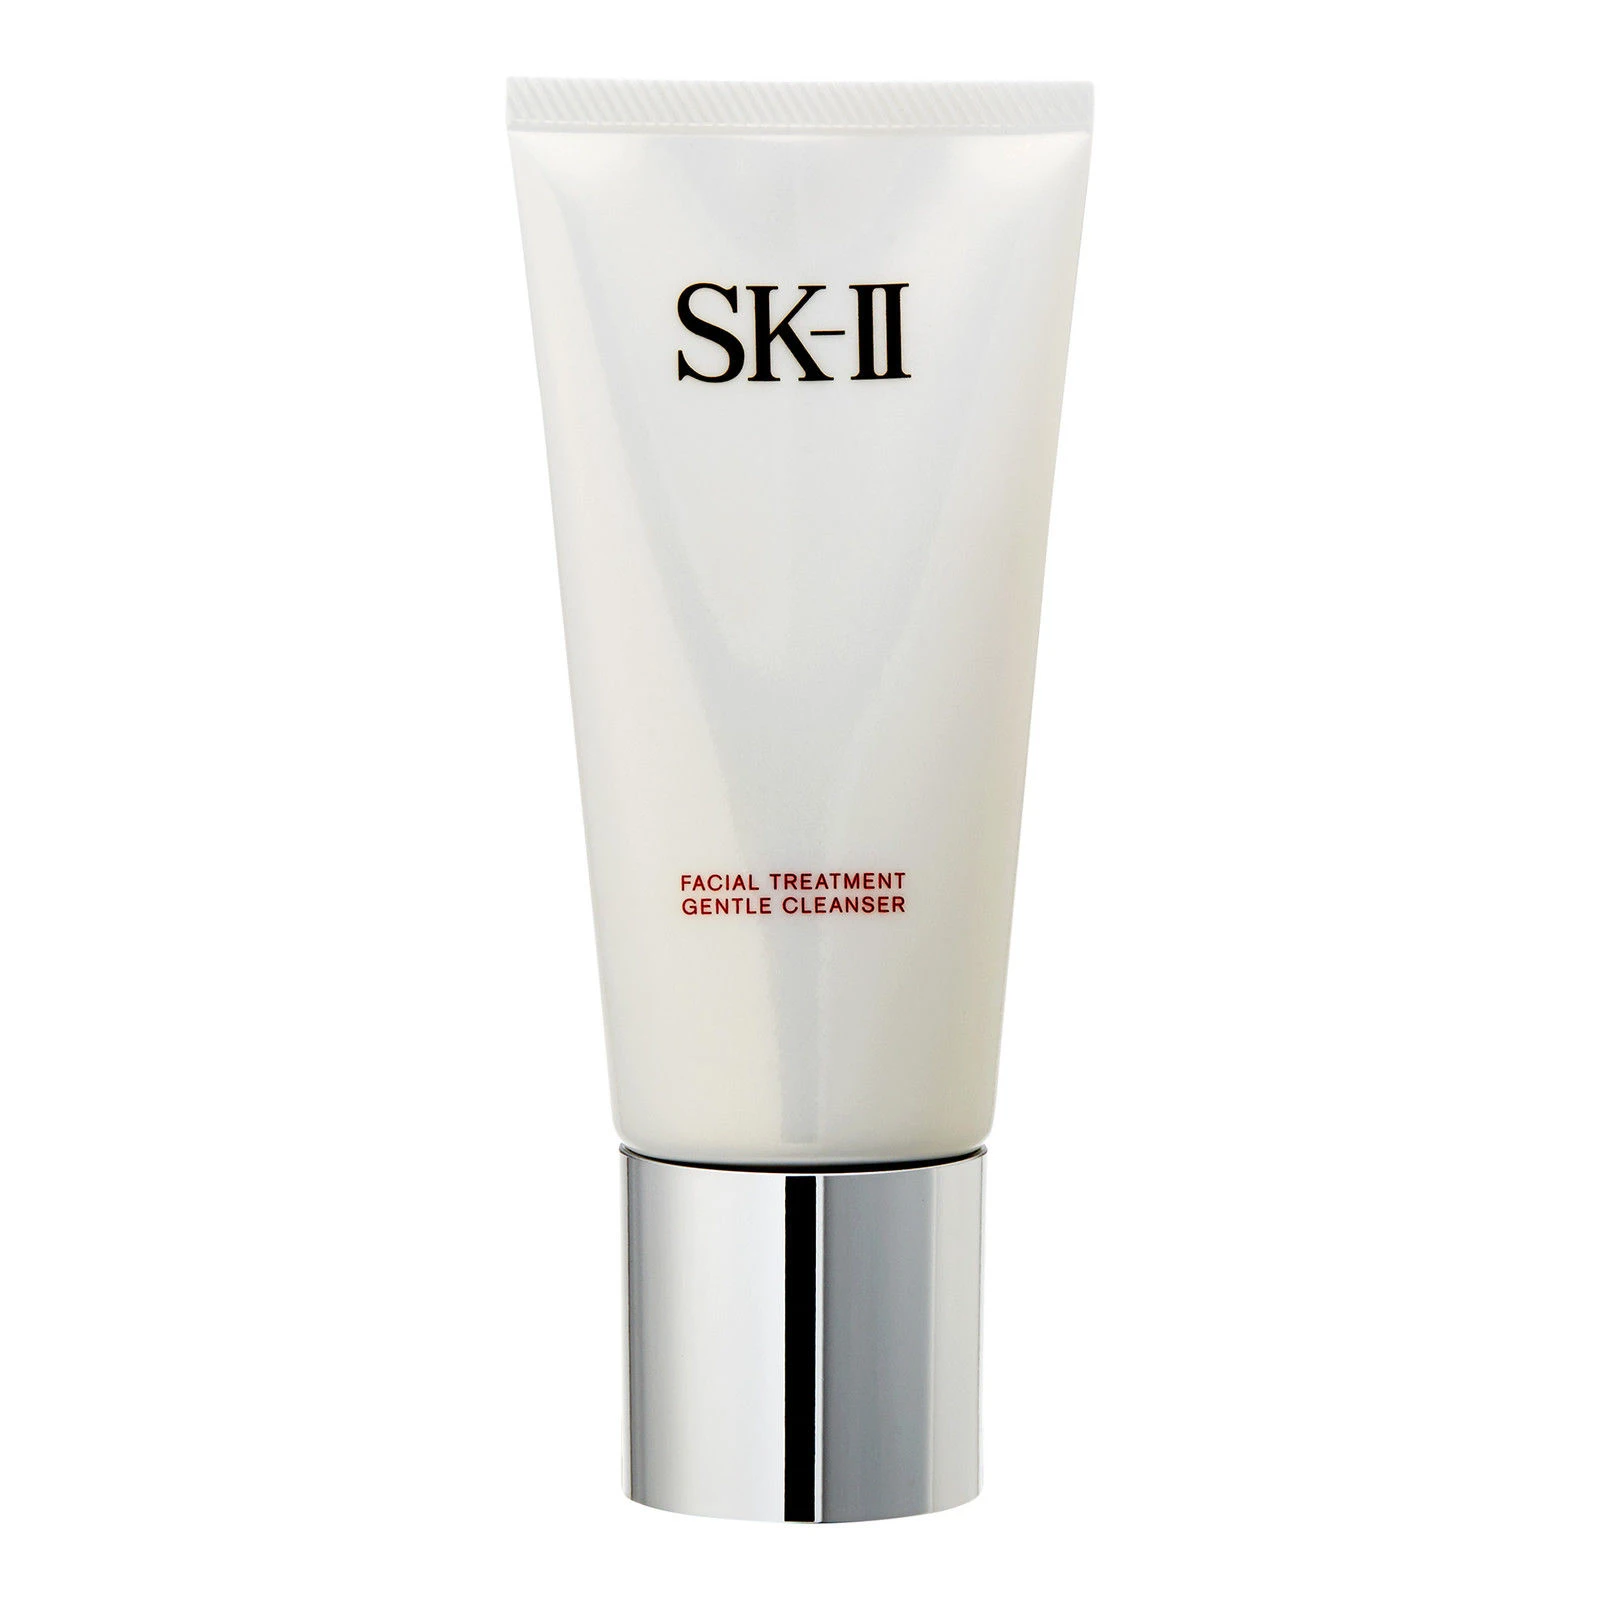 SK-II | SK2舒透护肤洁面霜120g保湿清洁氨基酸洁面乳 9.6折, 2件9.5折, 包邮包税, 满折